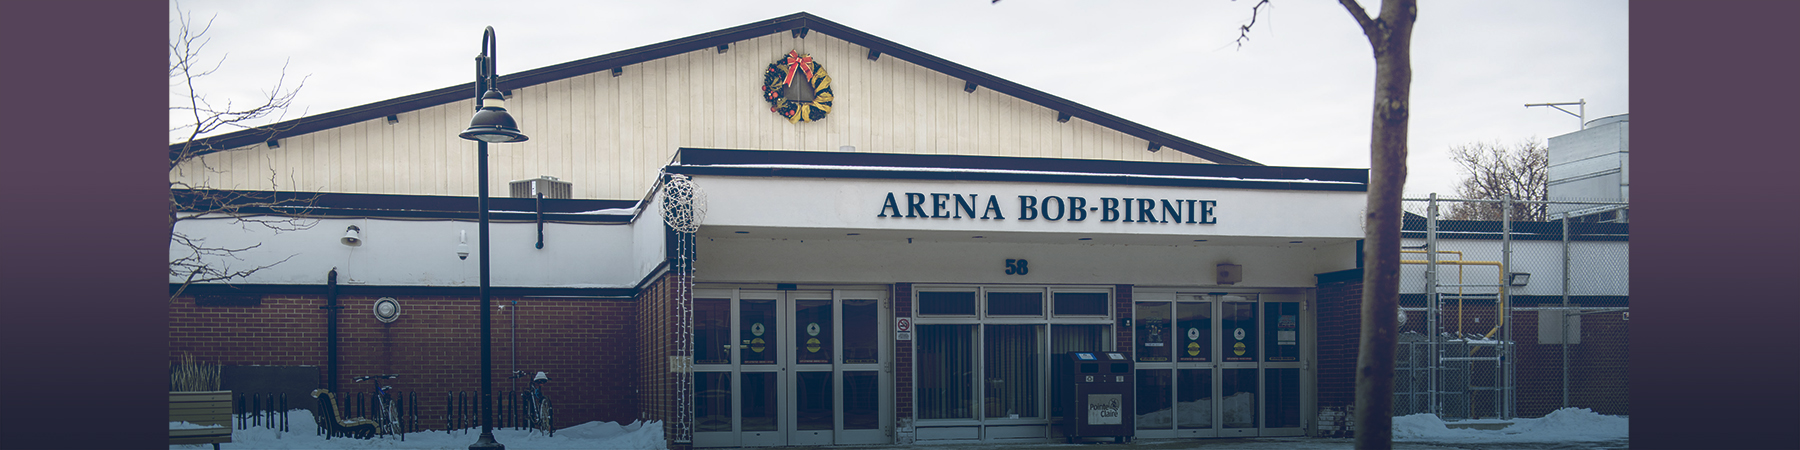 Pembaruan penting mengenai Bob-Birnie Arena